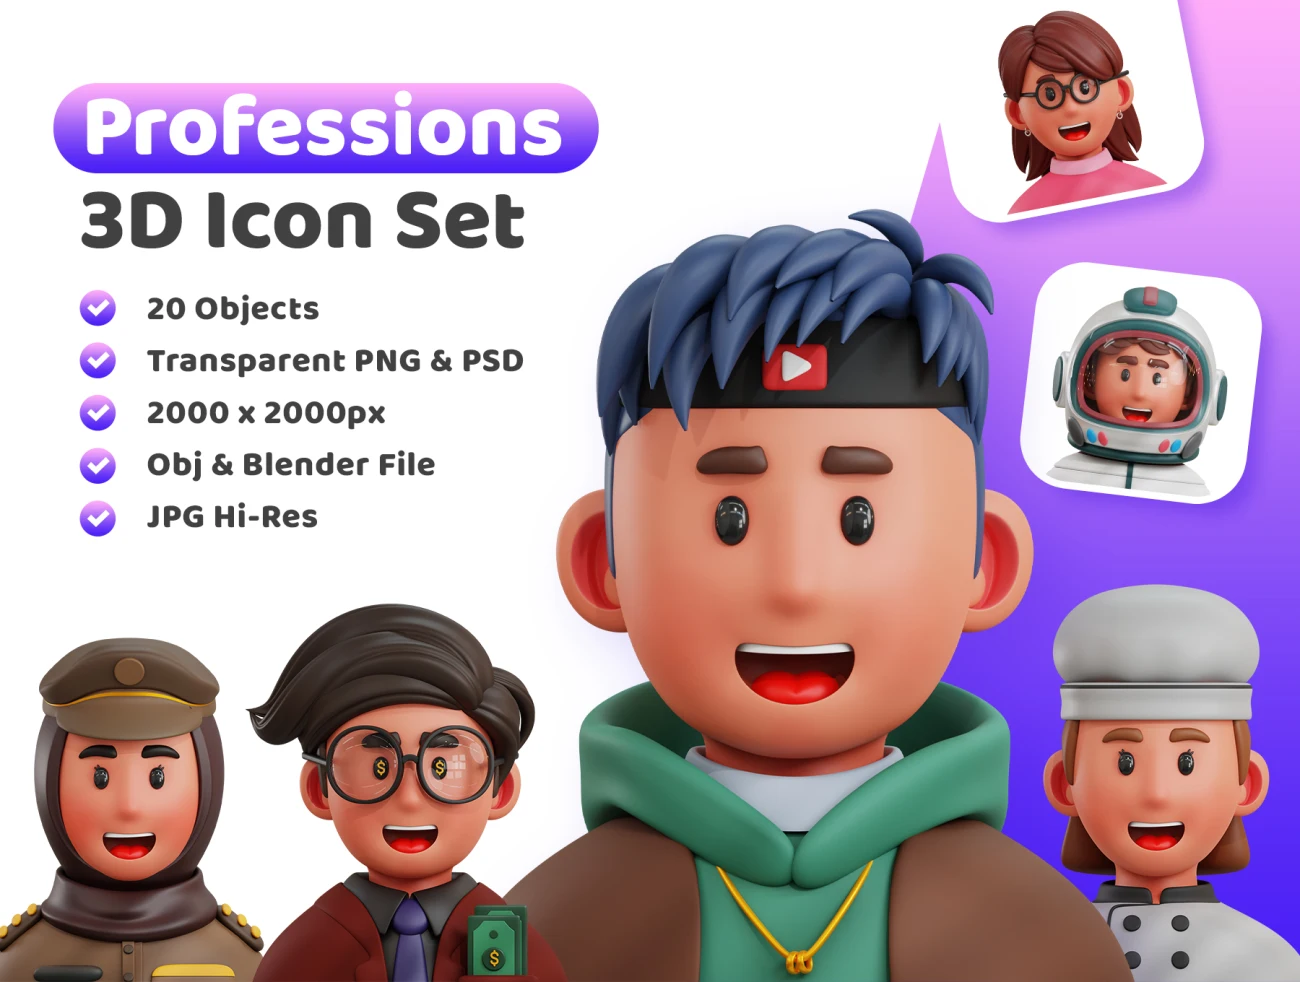 20款各行各业专业人物角色3D图标模型素材下载 3d Professions Icon .blender .psd插图1